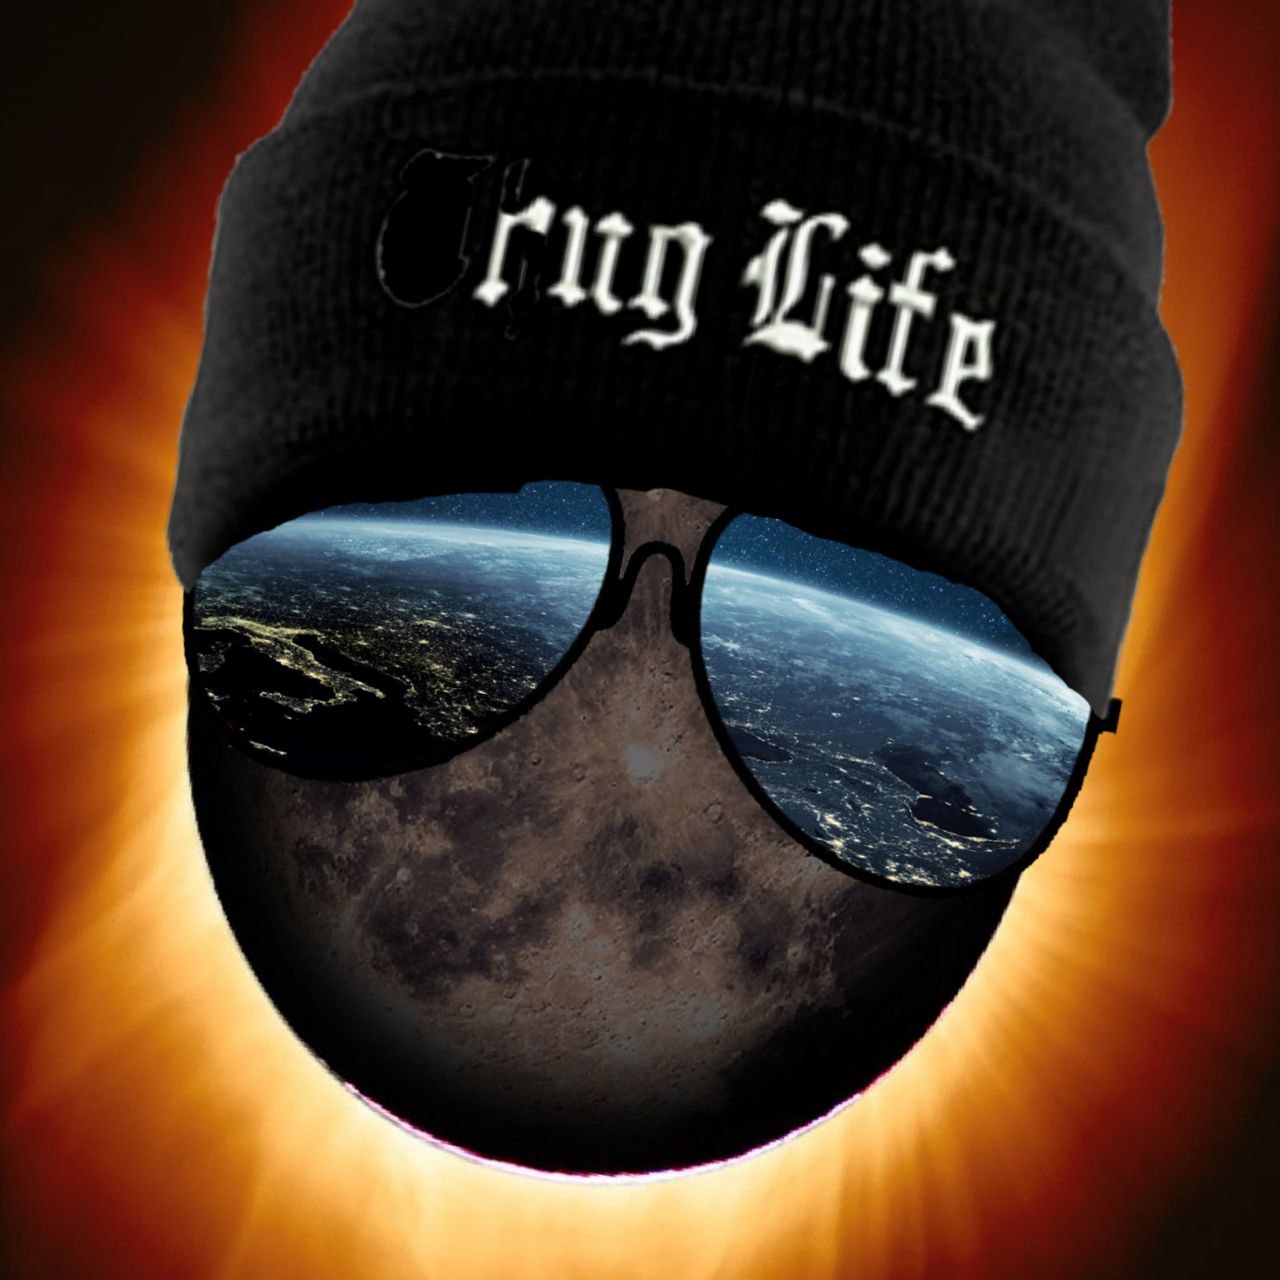 Rug Life